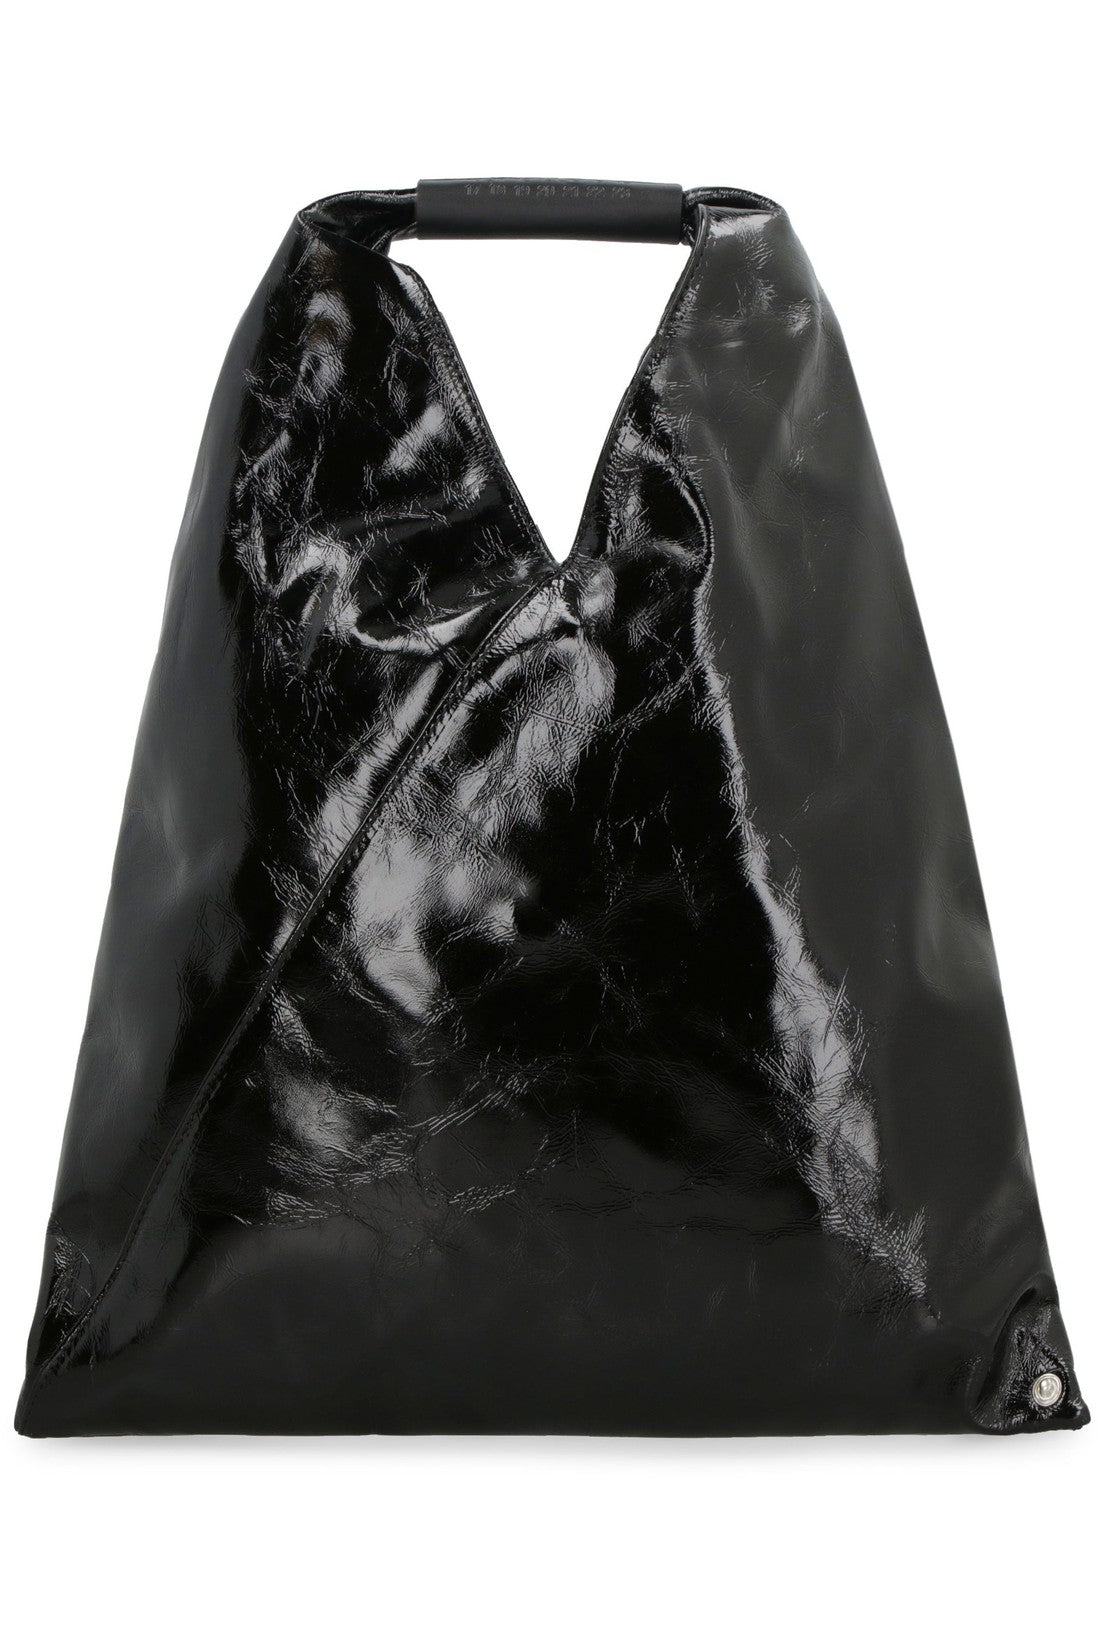 MM6 Maison Margiela-OUTLET-SALE-Japanese leather handbag-ARCHIVIST